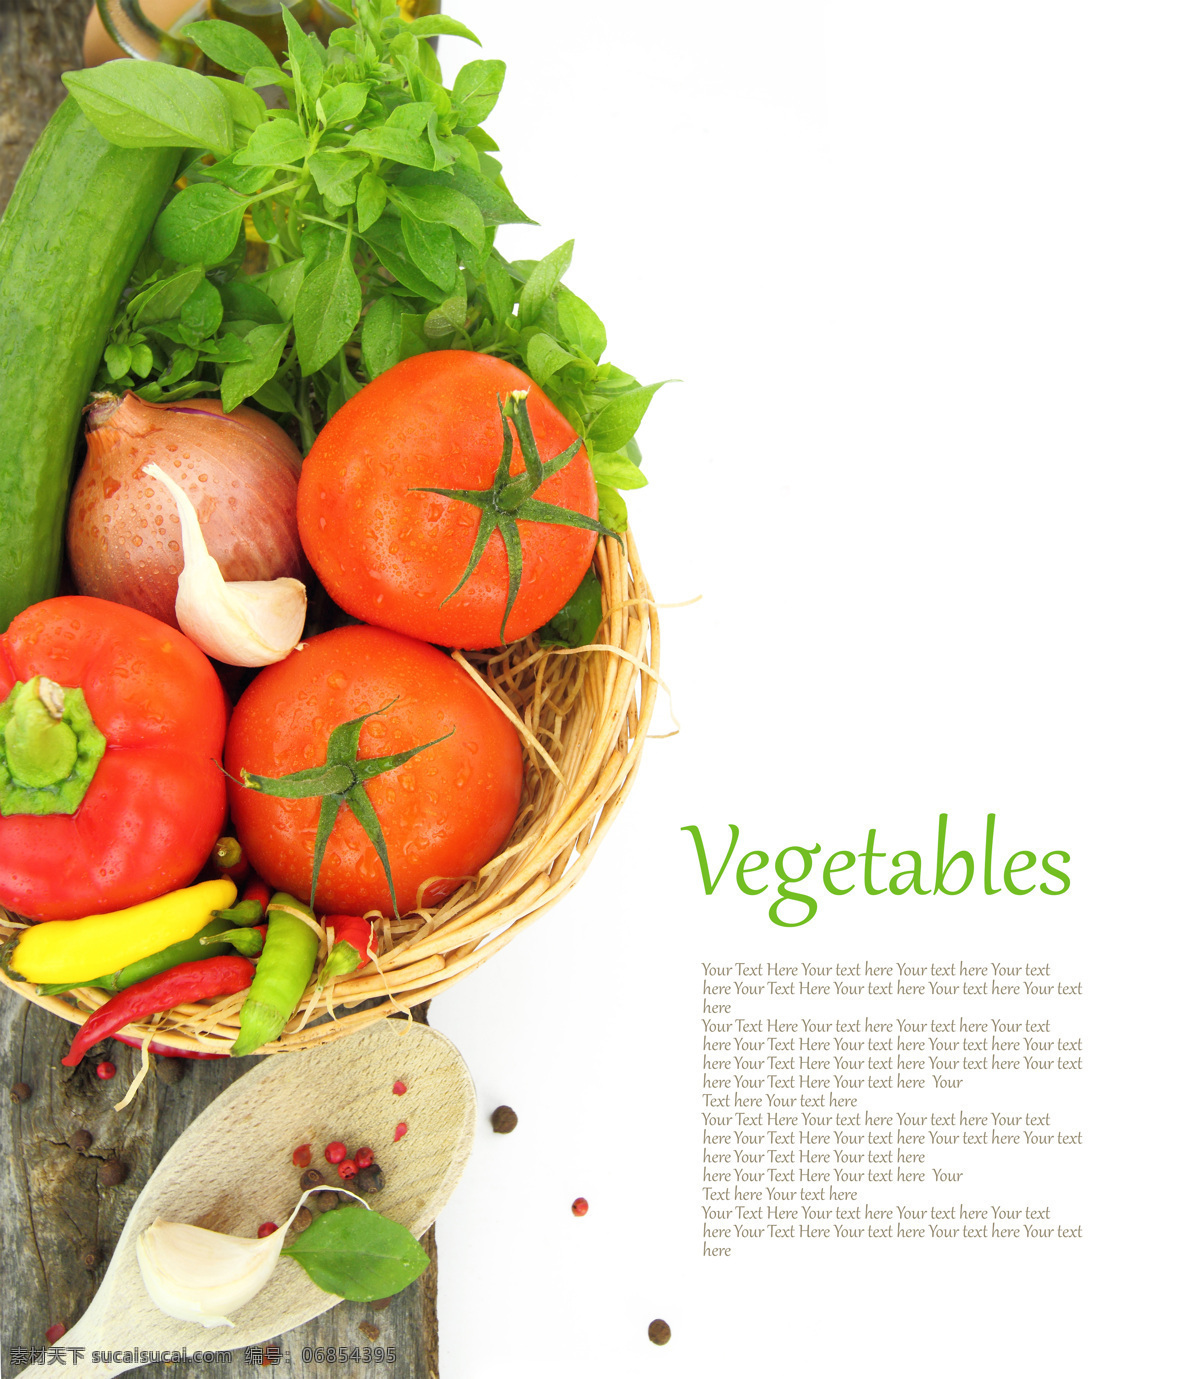 艳丽 蔬菜 背景 素材图片 艳丽的蔬菜 西红柿 洋葱 木勺子 背景素材 蔬菜图片 餐饮美食